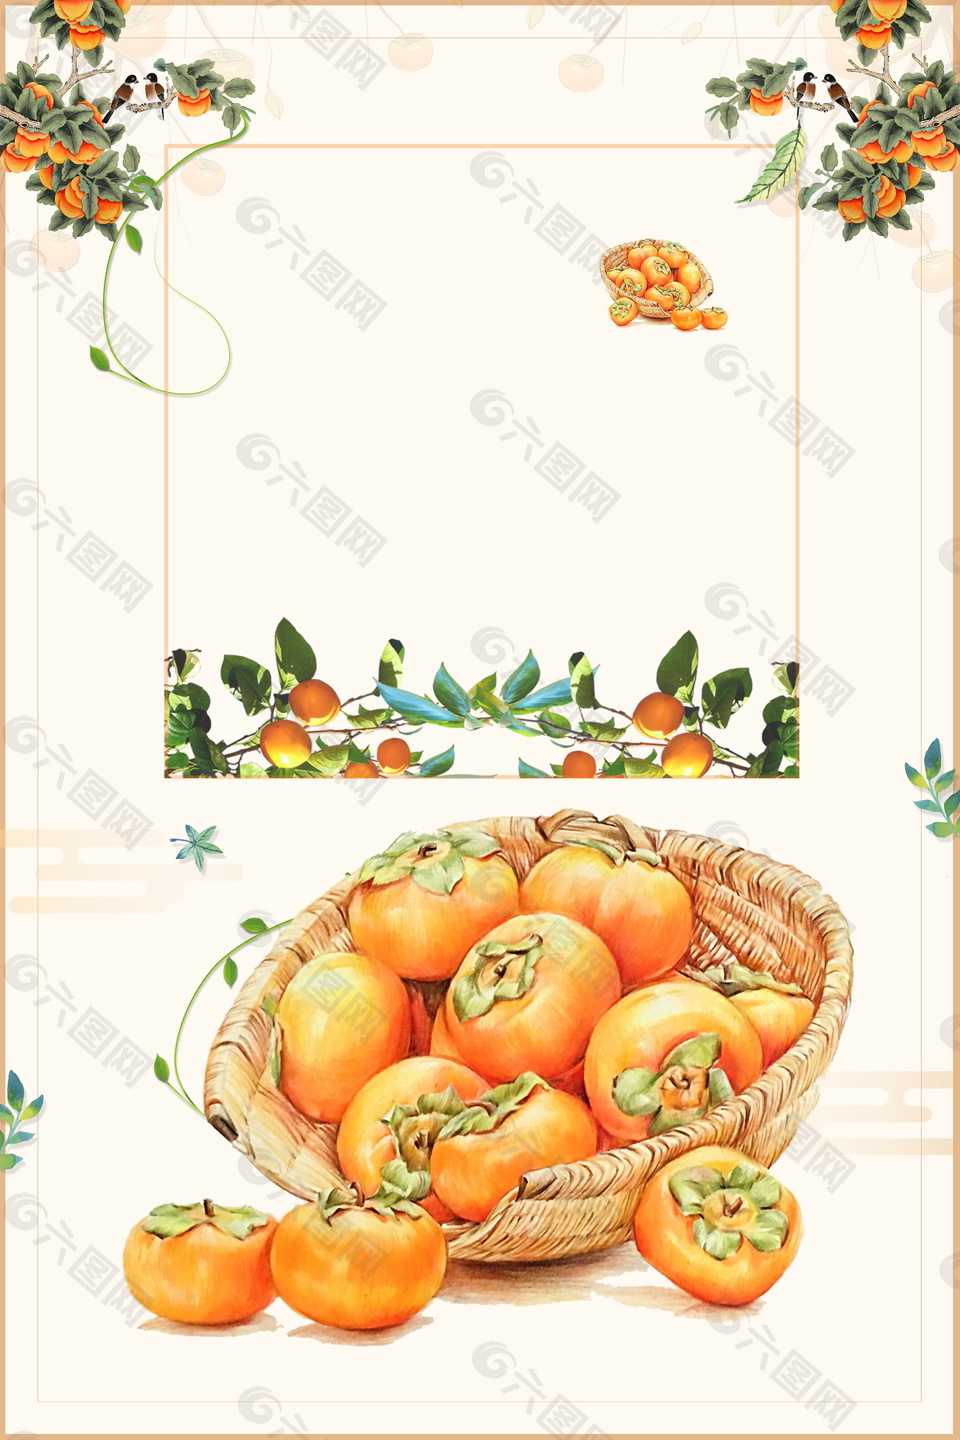 彩绘秋季柿子促销海报背景素材